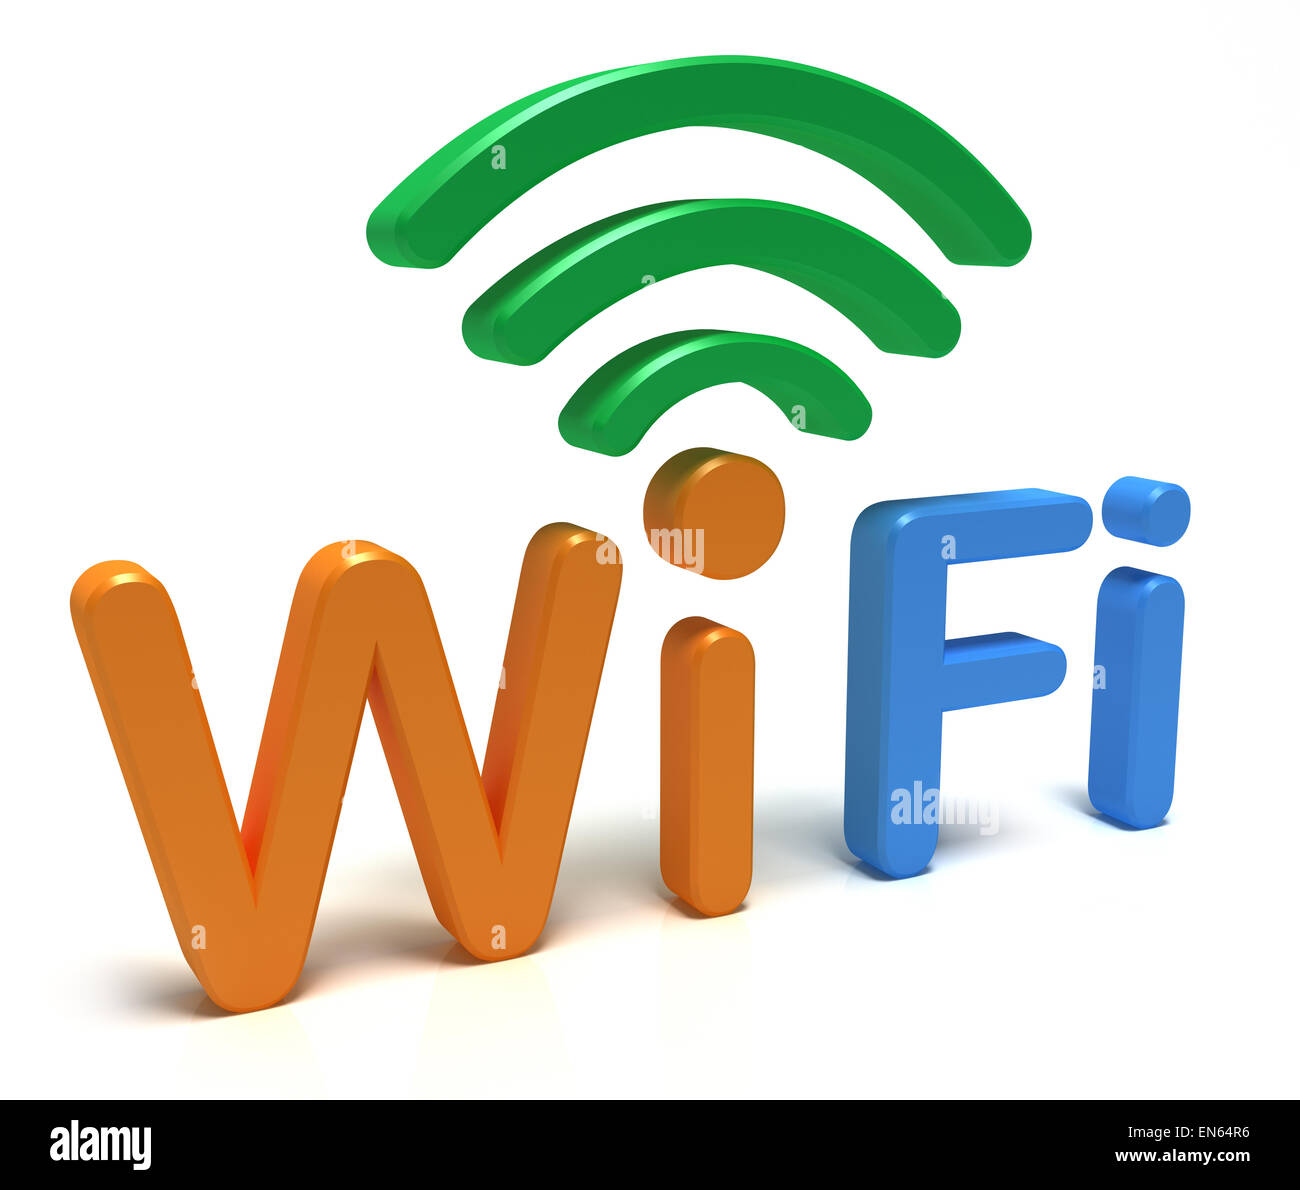 WiFi logo. 3D concept Stock Photo